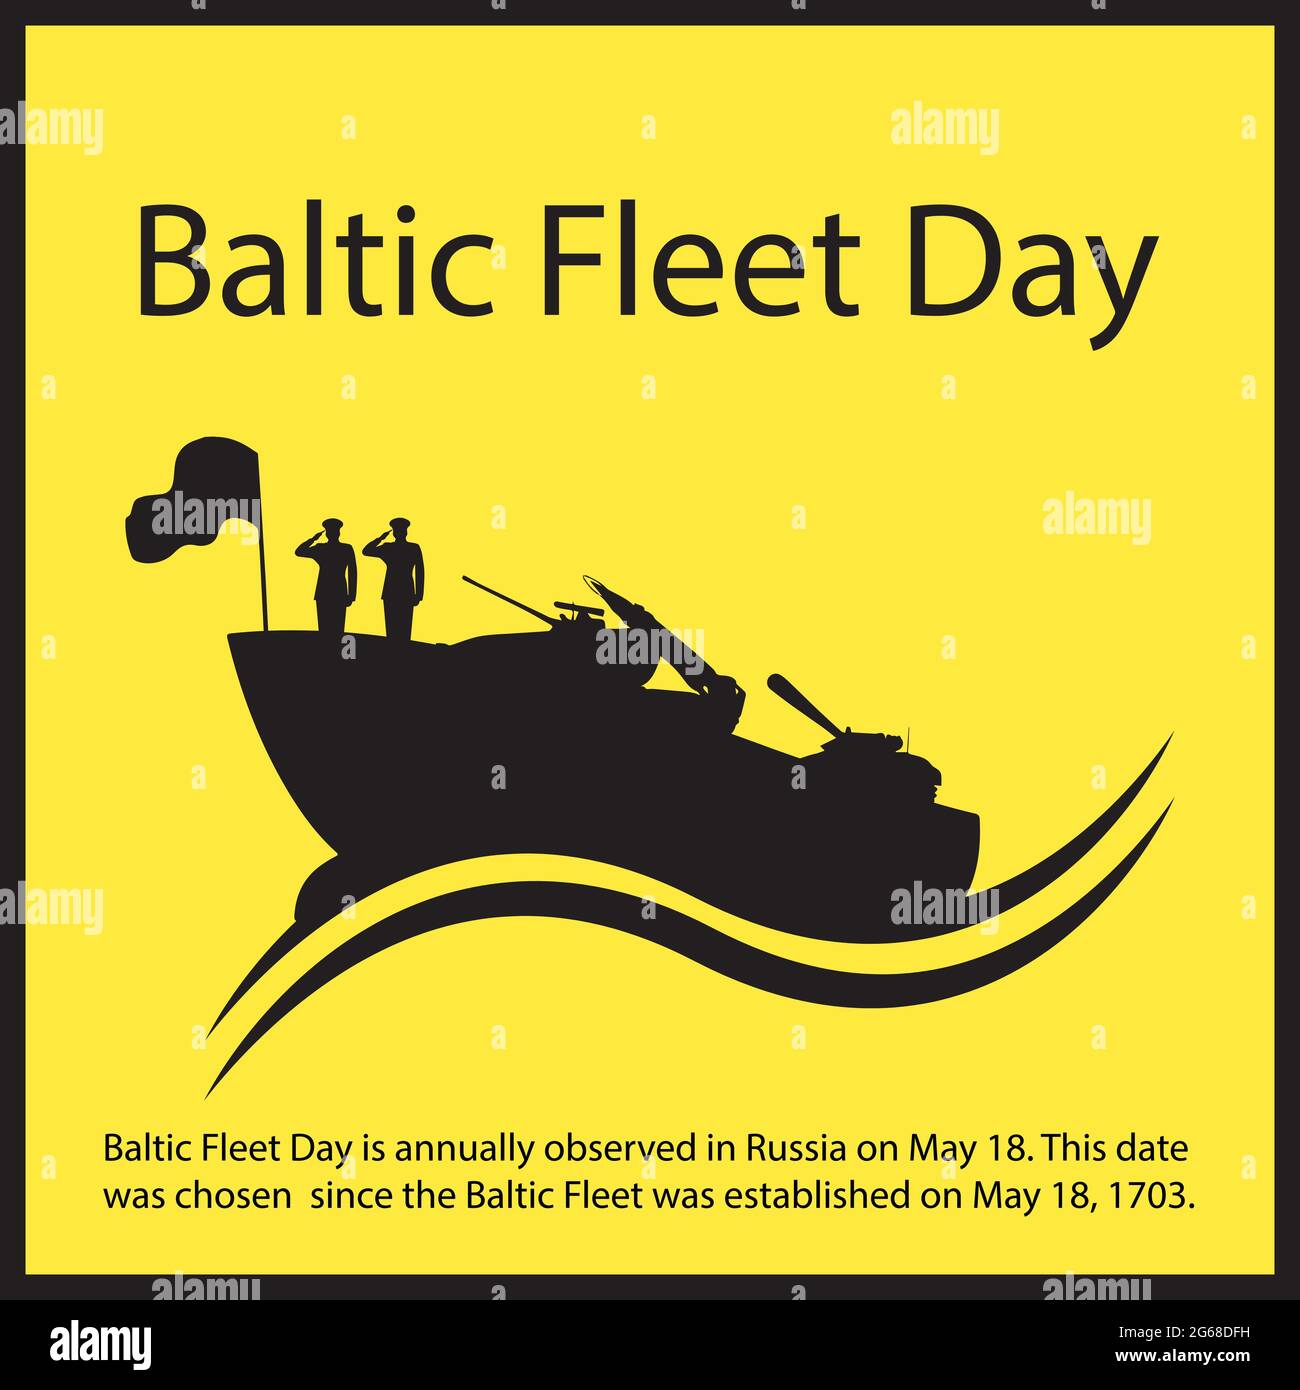 Der Baltische Flottentag wird in Russland jährlich am 18. Mai begangen. Dieses Datum wurde gewählt, seit die baltische Flotte am 18. Mai 1703 gegründet wurde. Stock Vektor